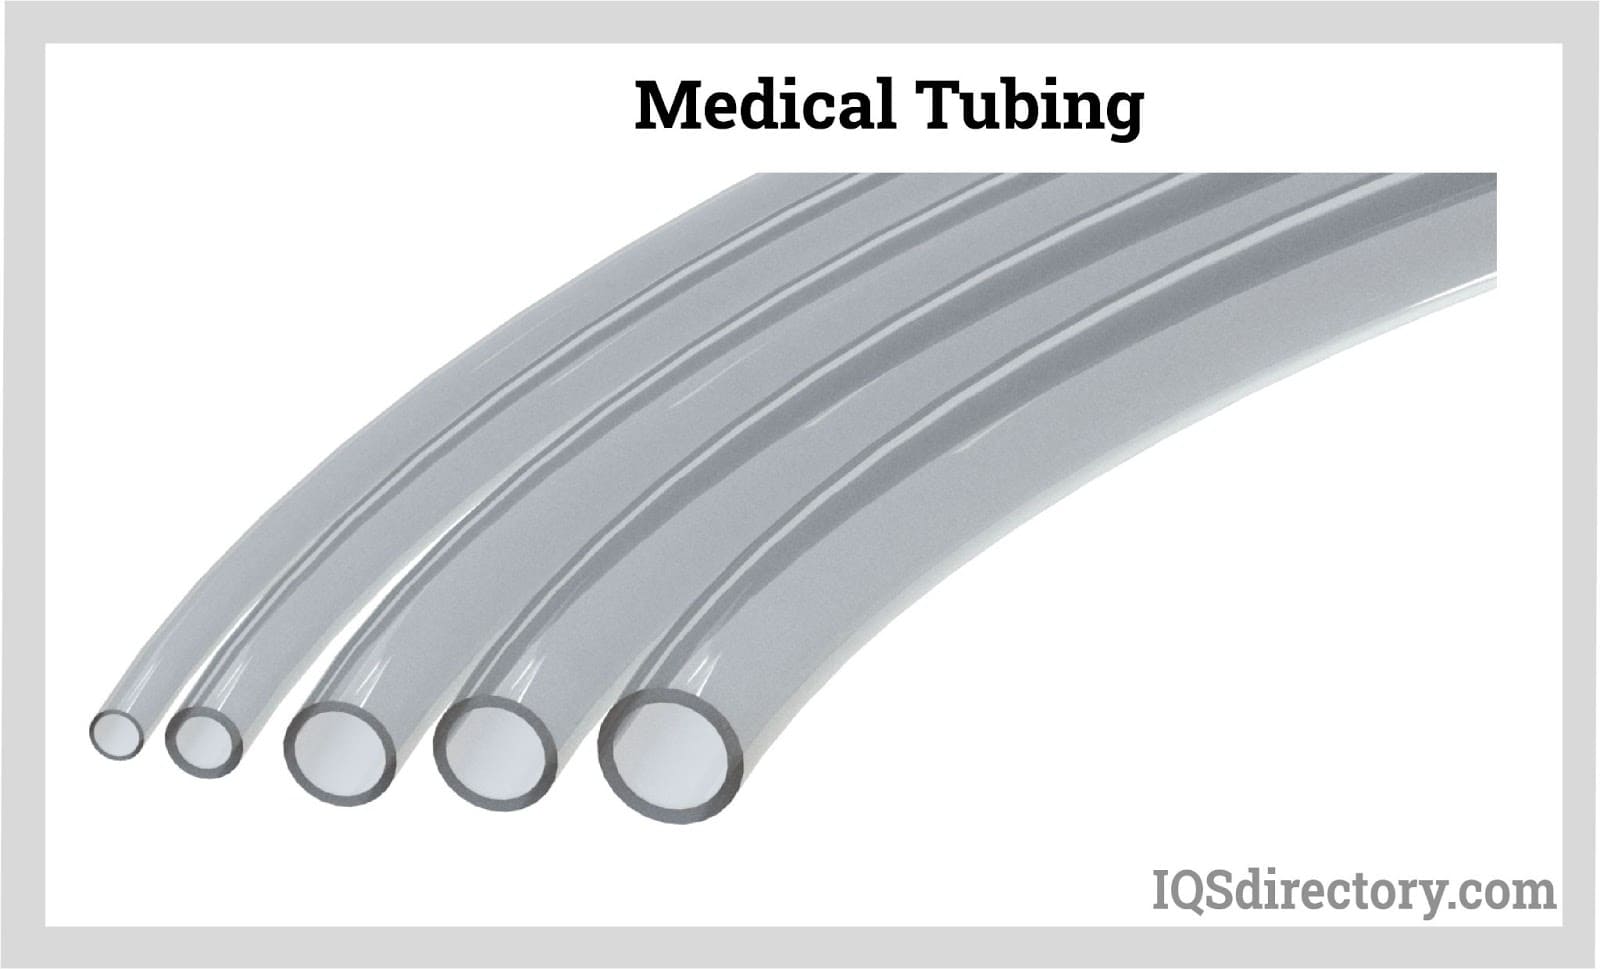 Medical Tubing